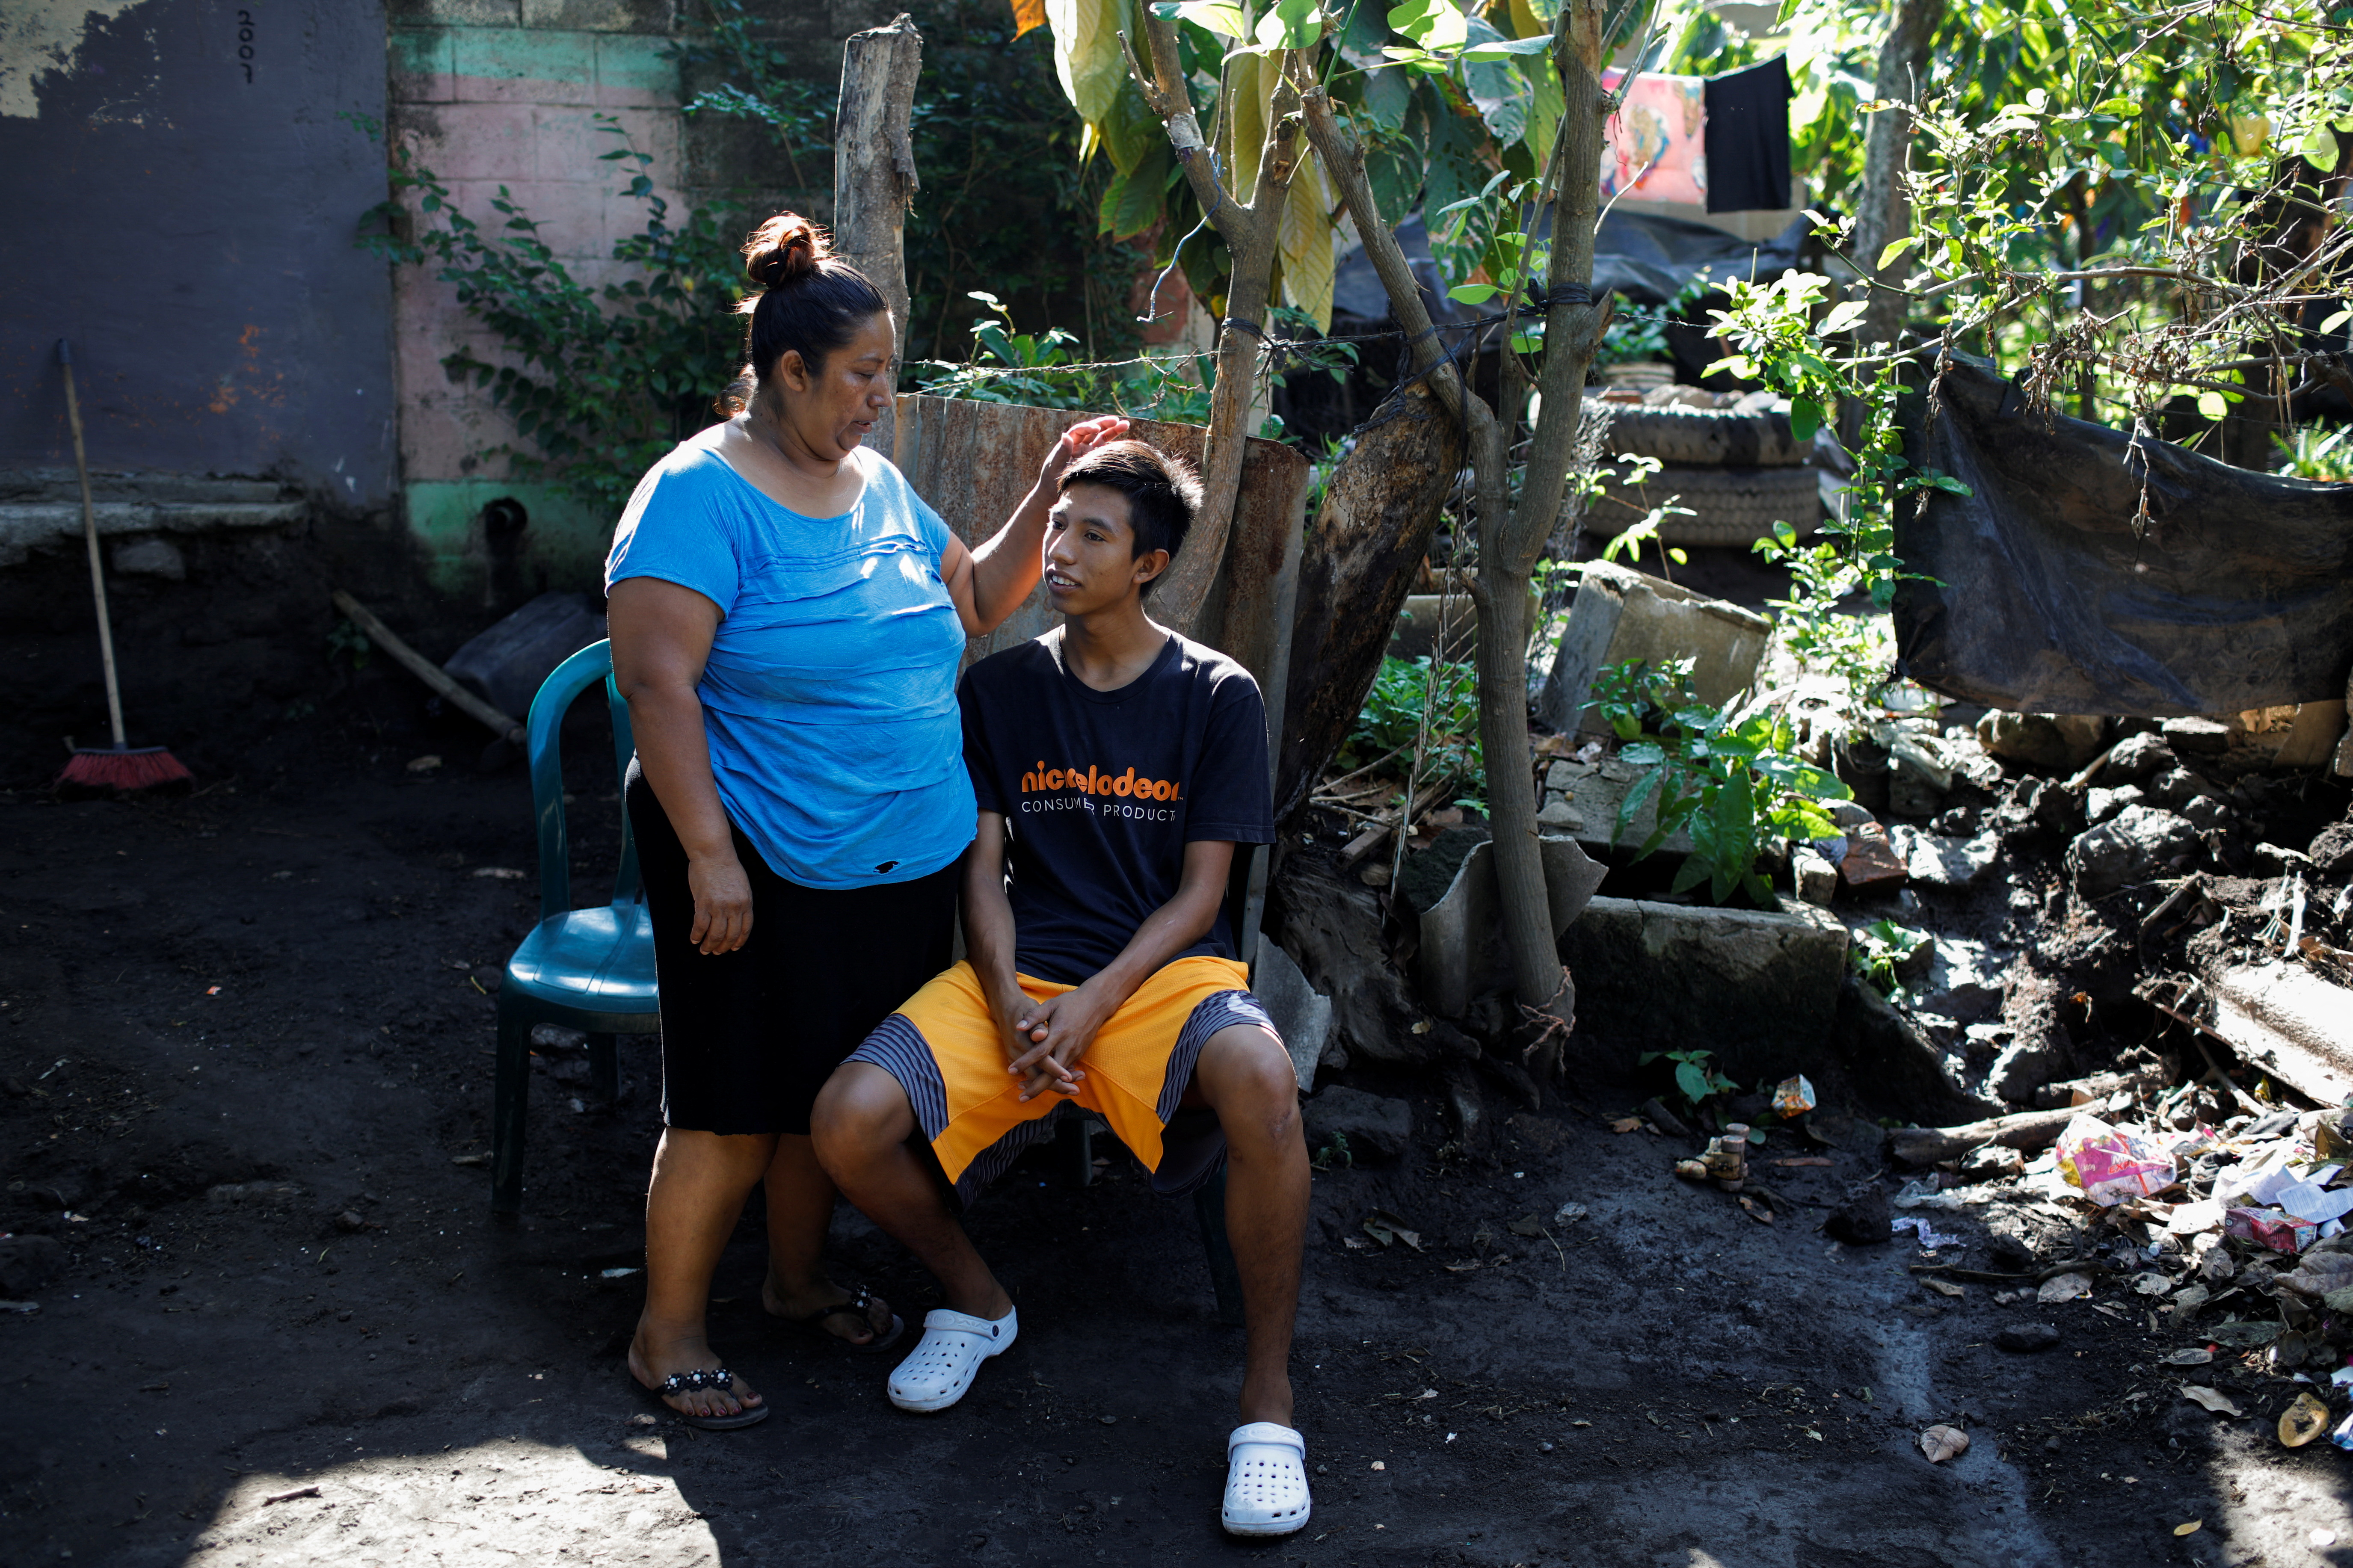 In El Salvador's crackdown on gangs, quotas drive detention of innocents